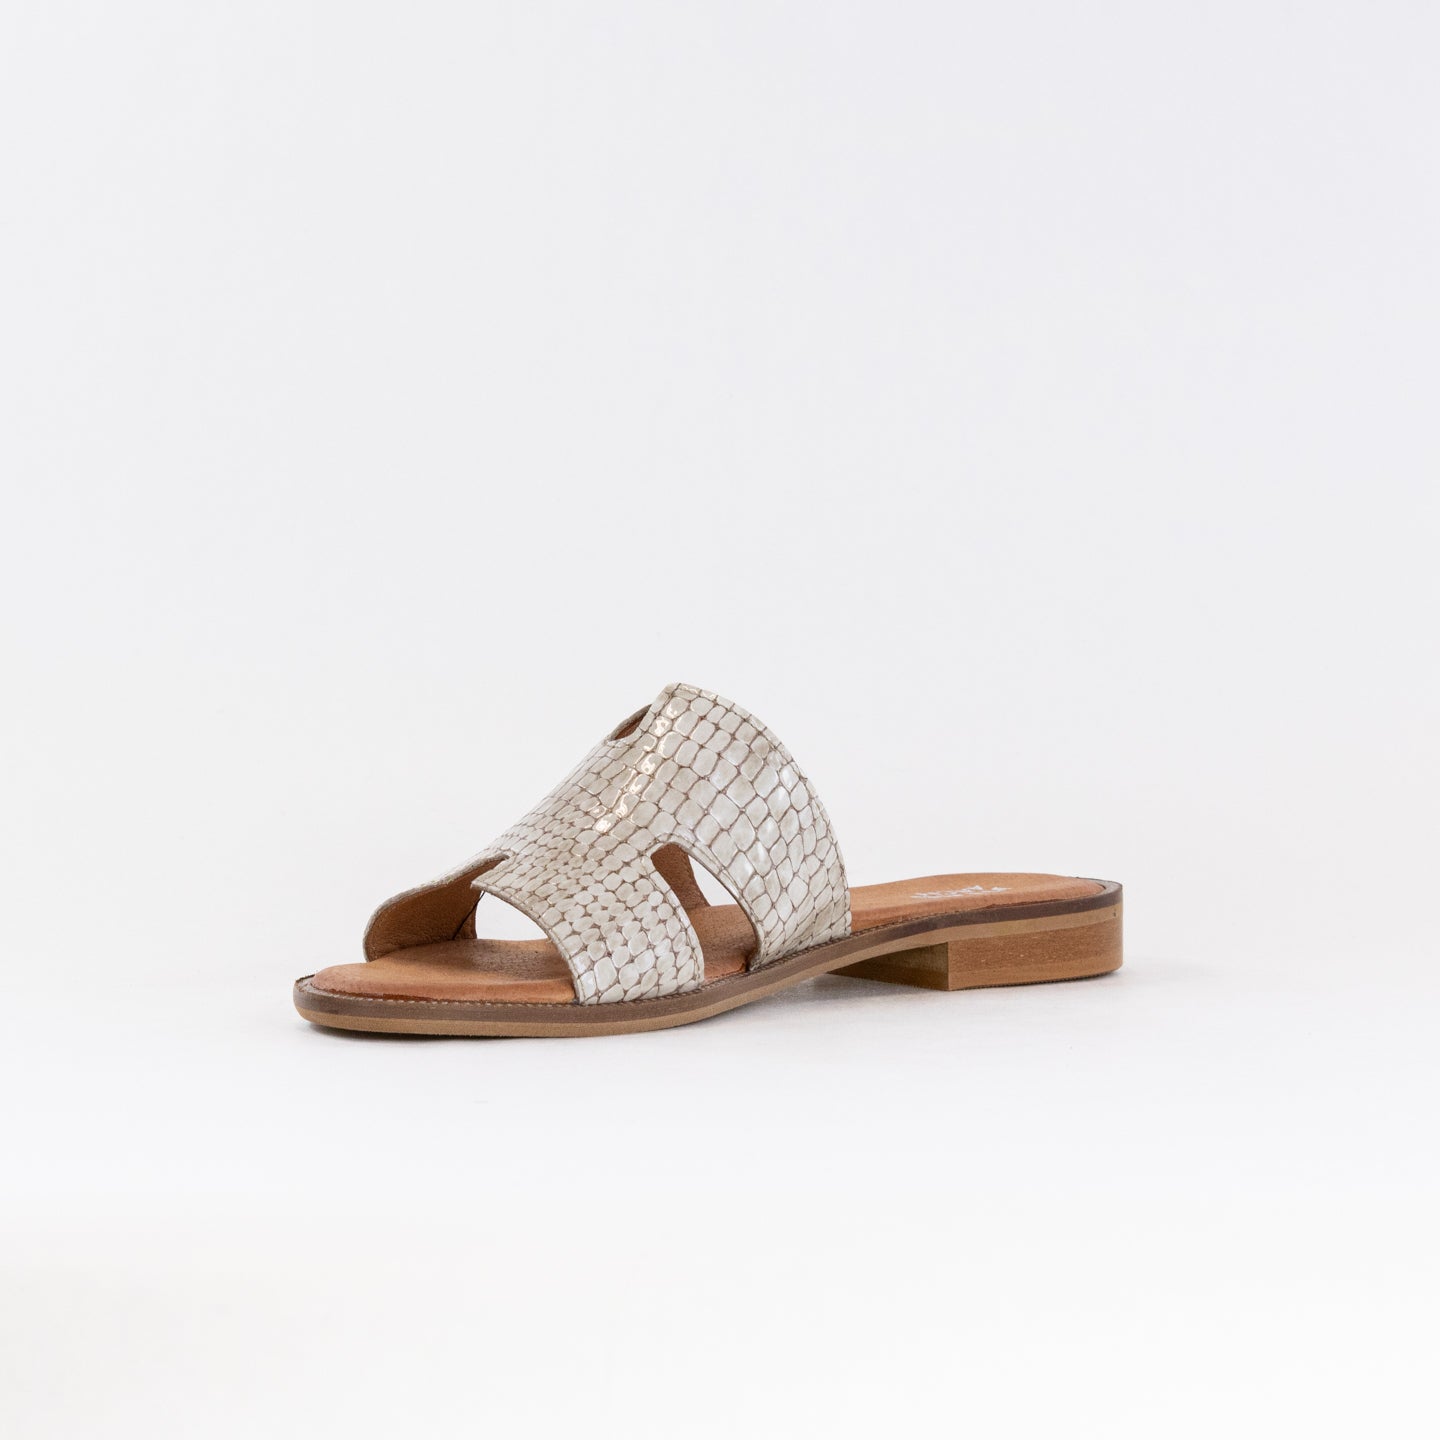 V-Italia 537 Sandal (Women's) - Bez Krok Patent